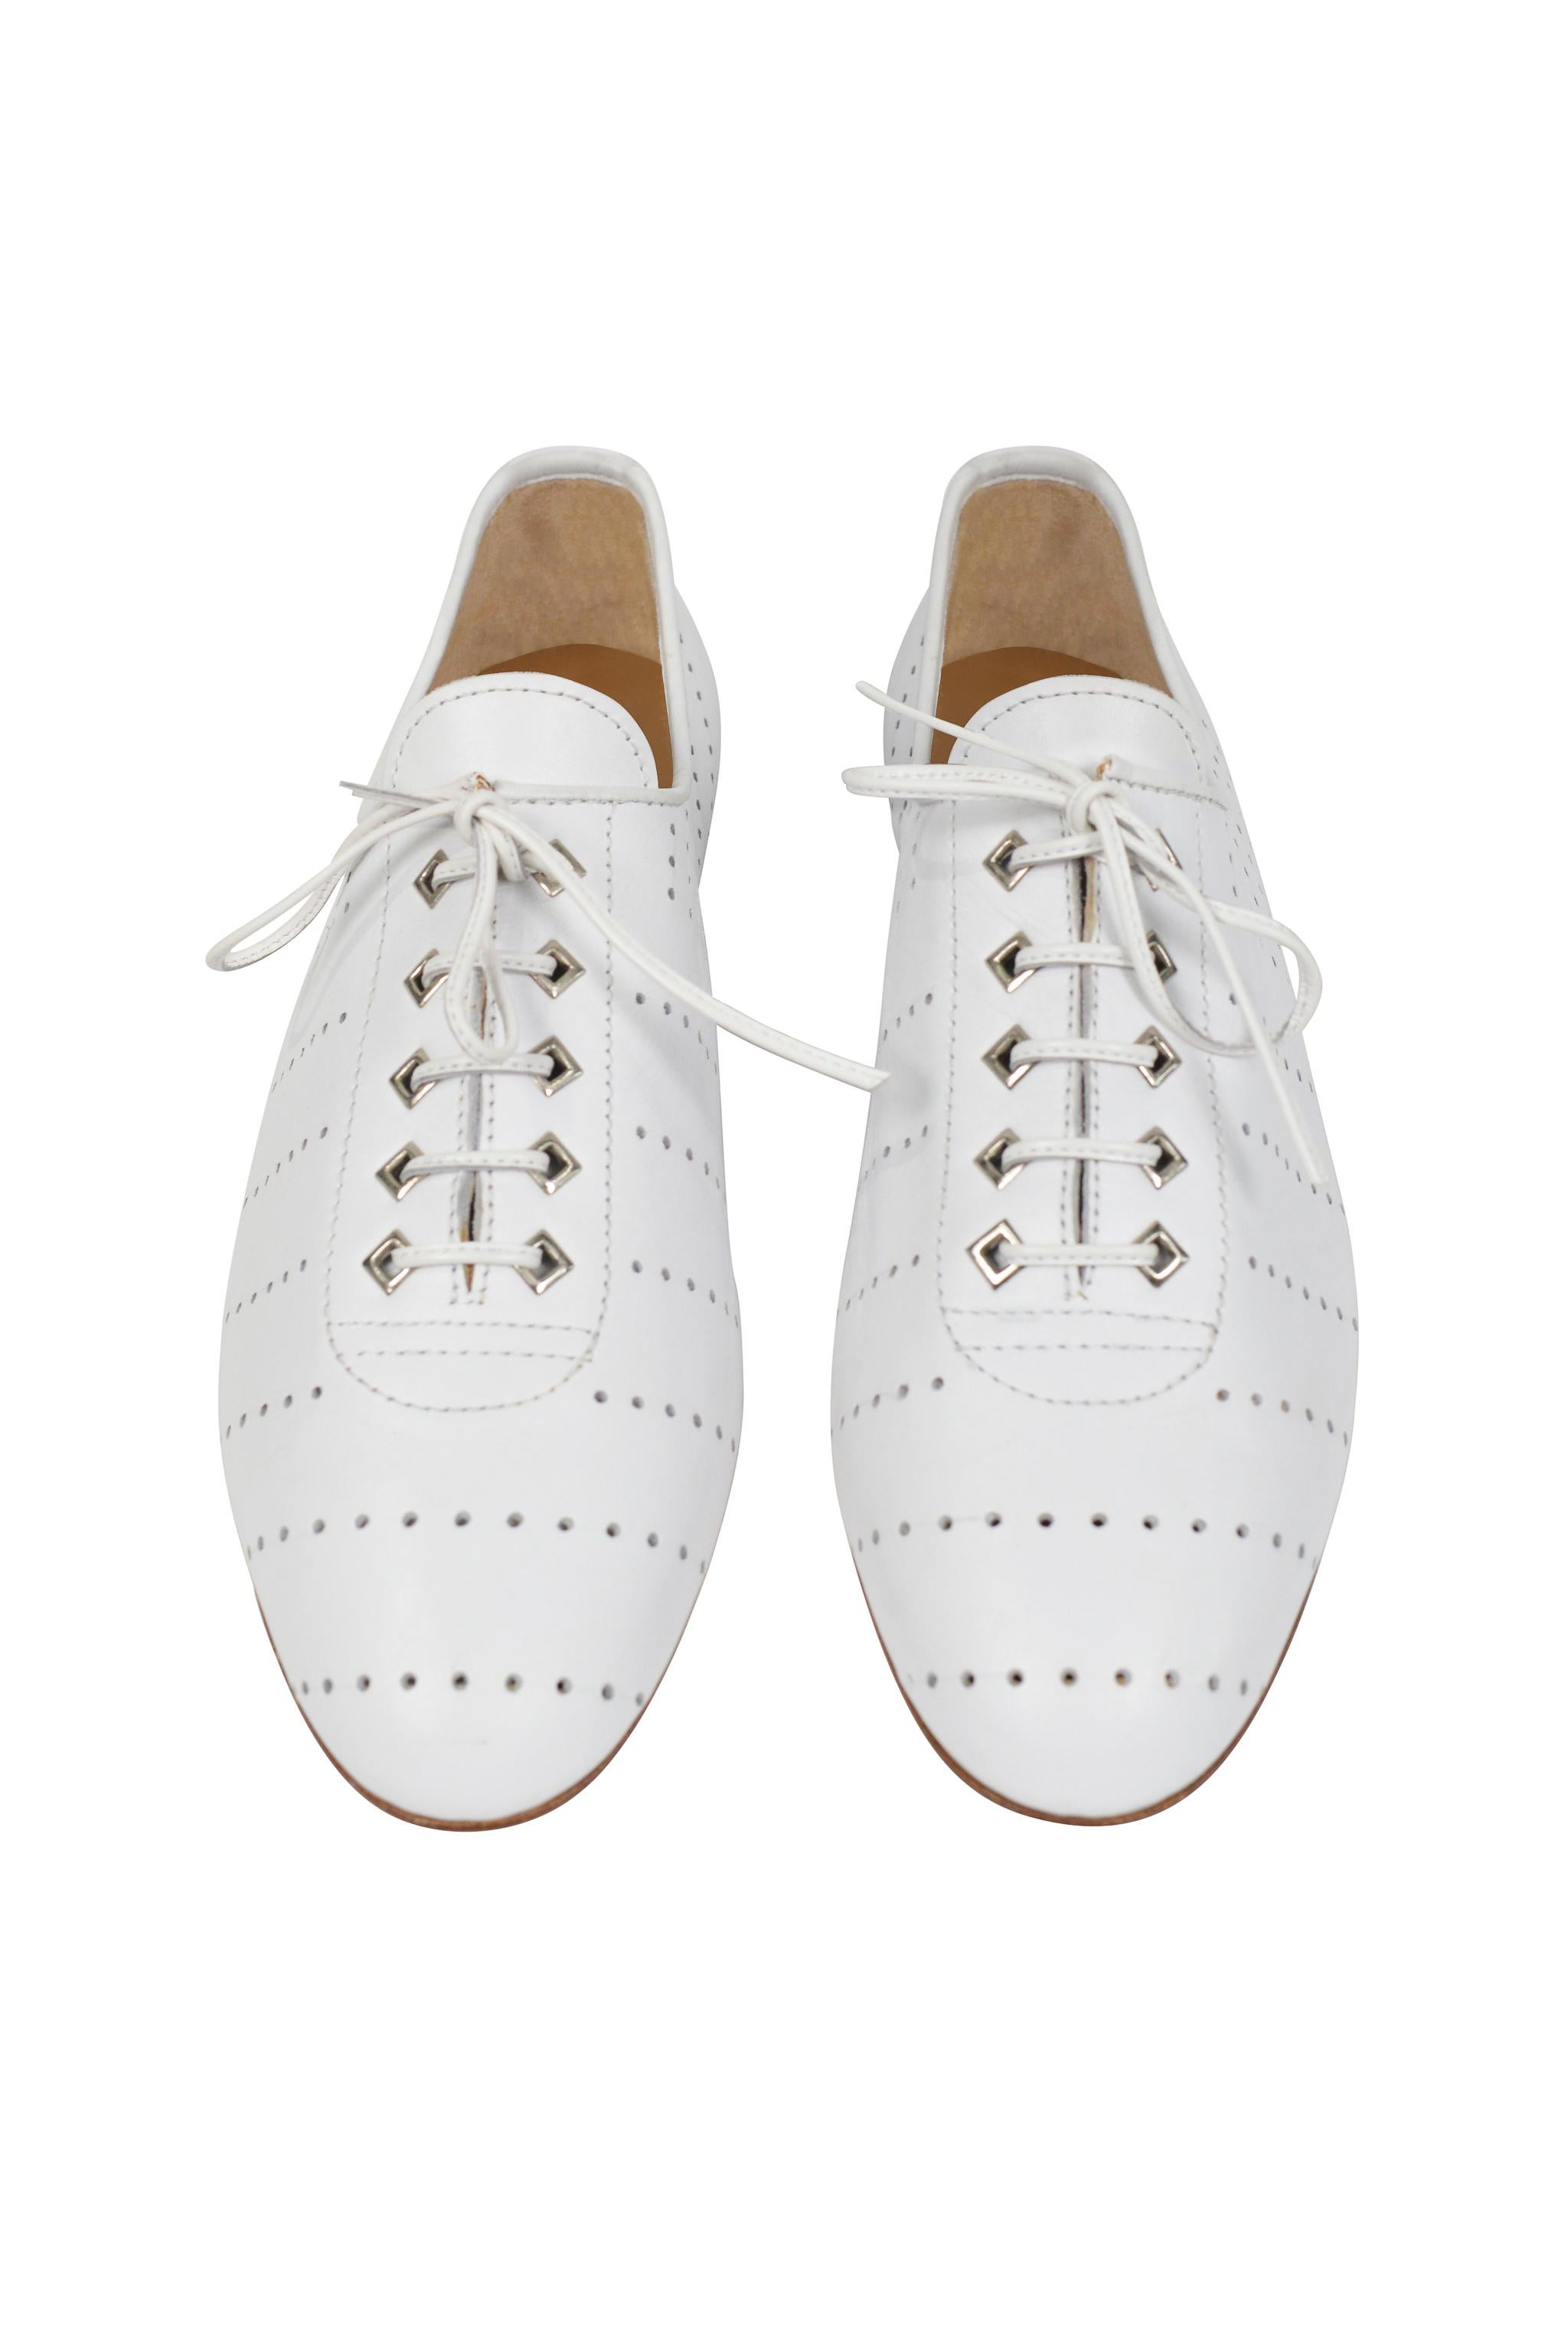 Gris Chaussures Oxford Brogue perforées en cuir blanc Alaia, années 80-90 en vente